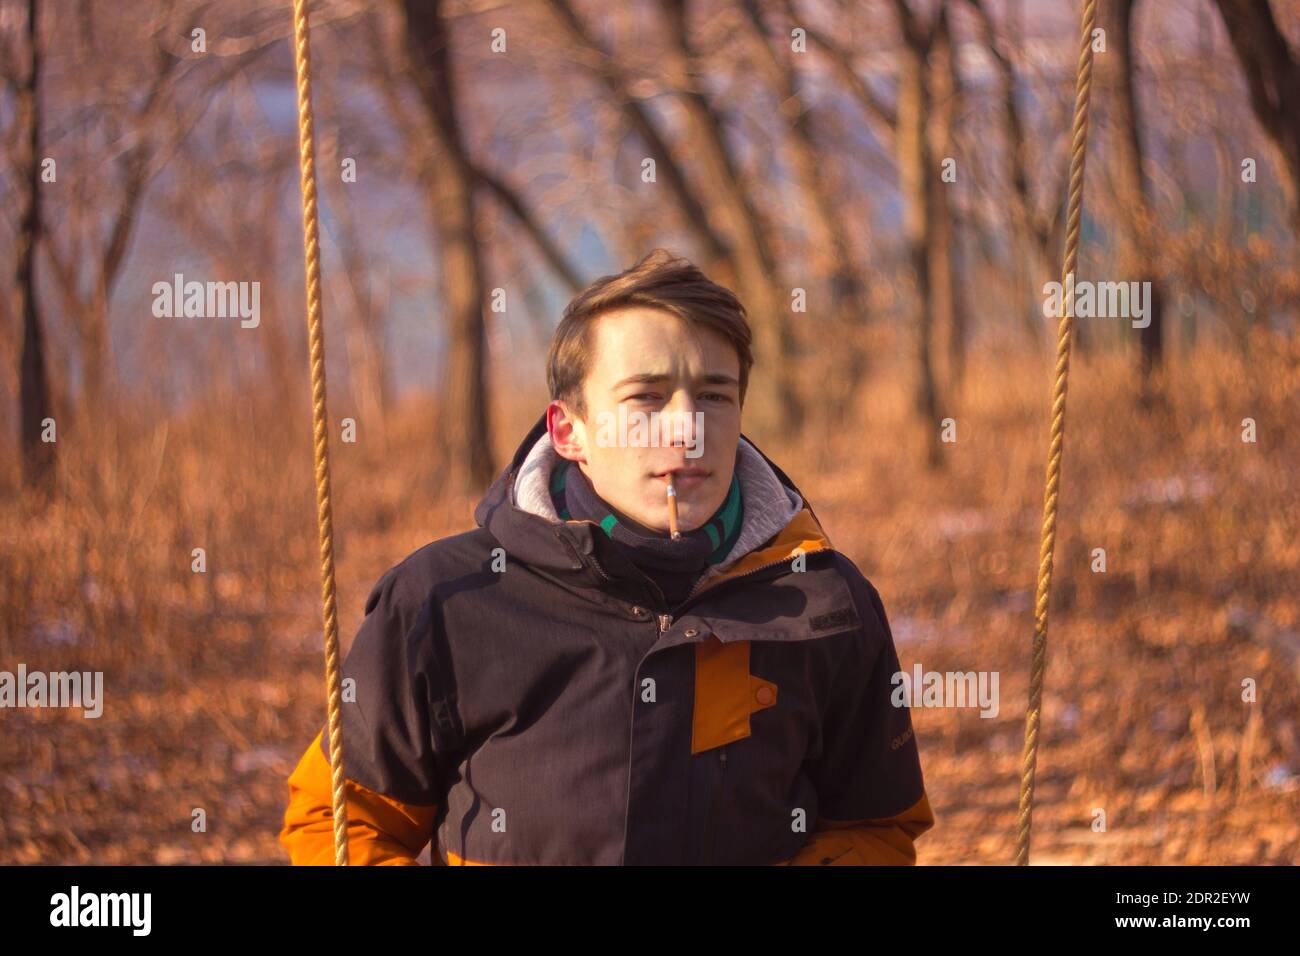 Retrato del joven Fumando Cigarrillo contra los árboles Foto de stock